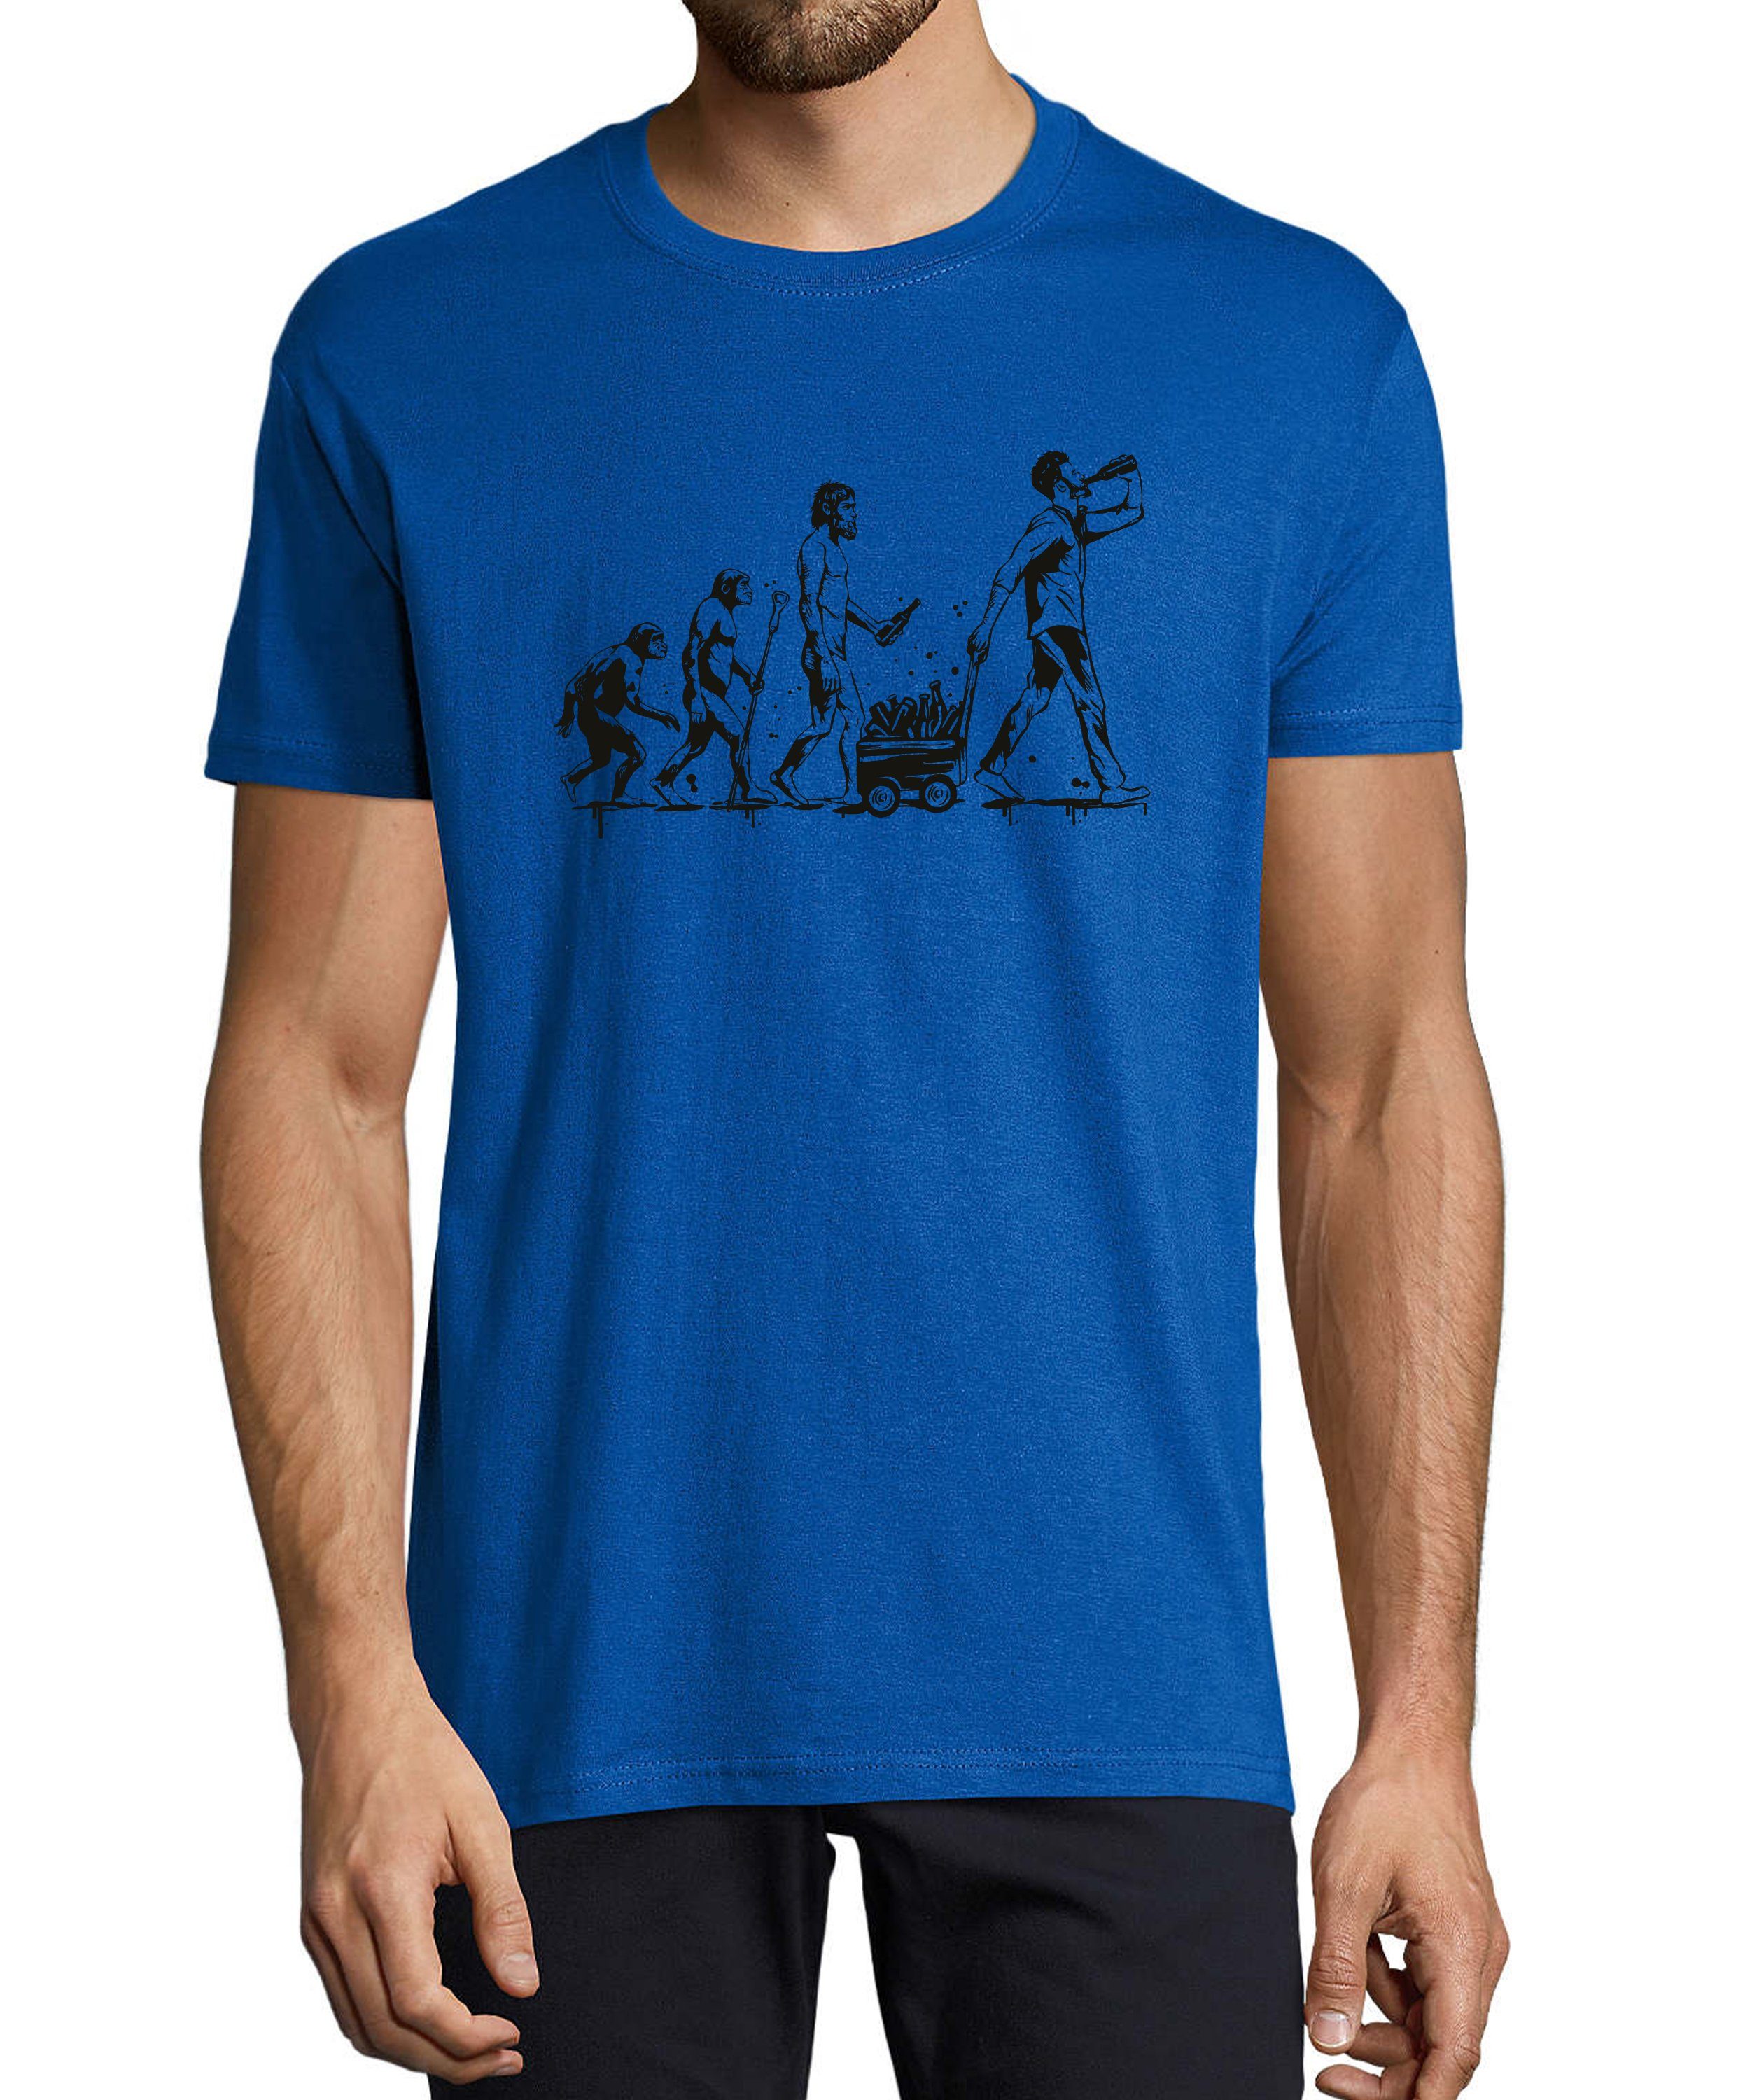 MyDesign24 T-Shirt Herren Fun Print Shirt - Trinkshirt Evolution bis zum trinkenden Mann Baumwollshirt mit Aufdruck Regular Fit, i312 royal blau